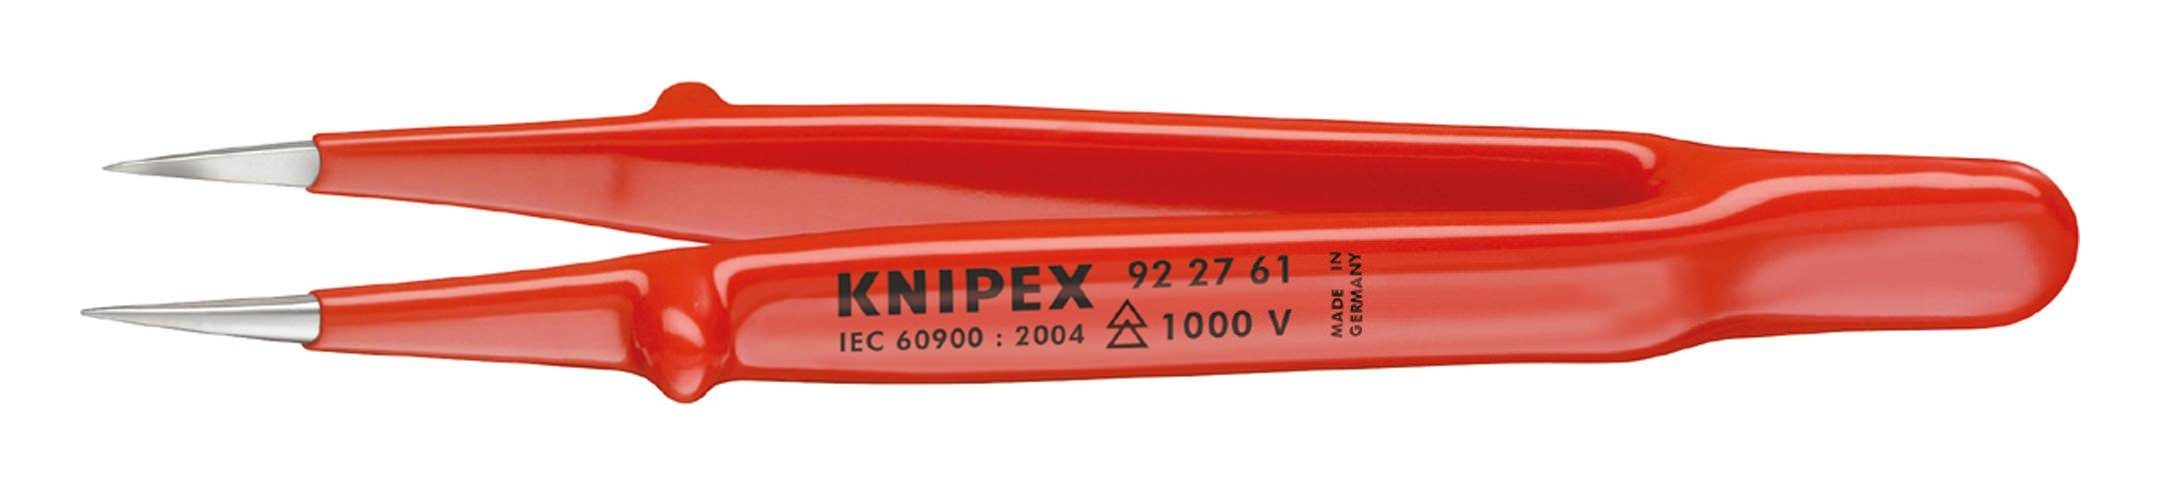 Knipex Präzisionspinzette, VDE 130 mm spitz gerade